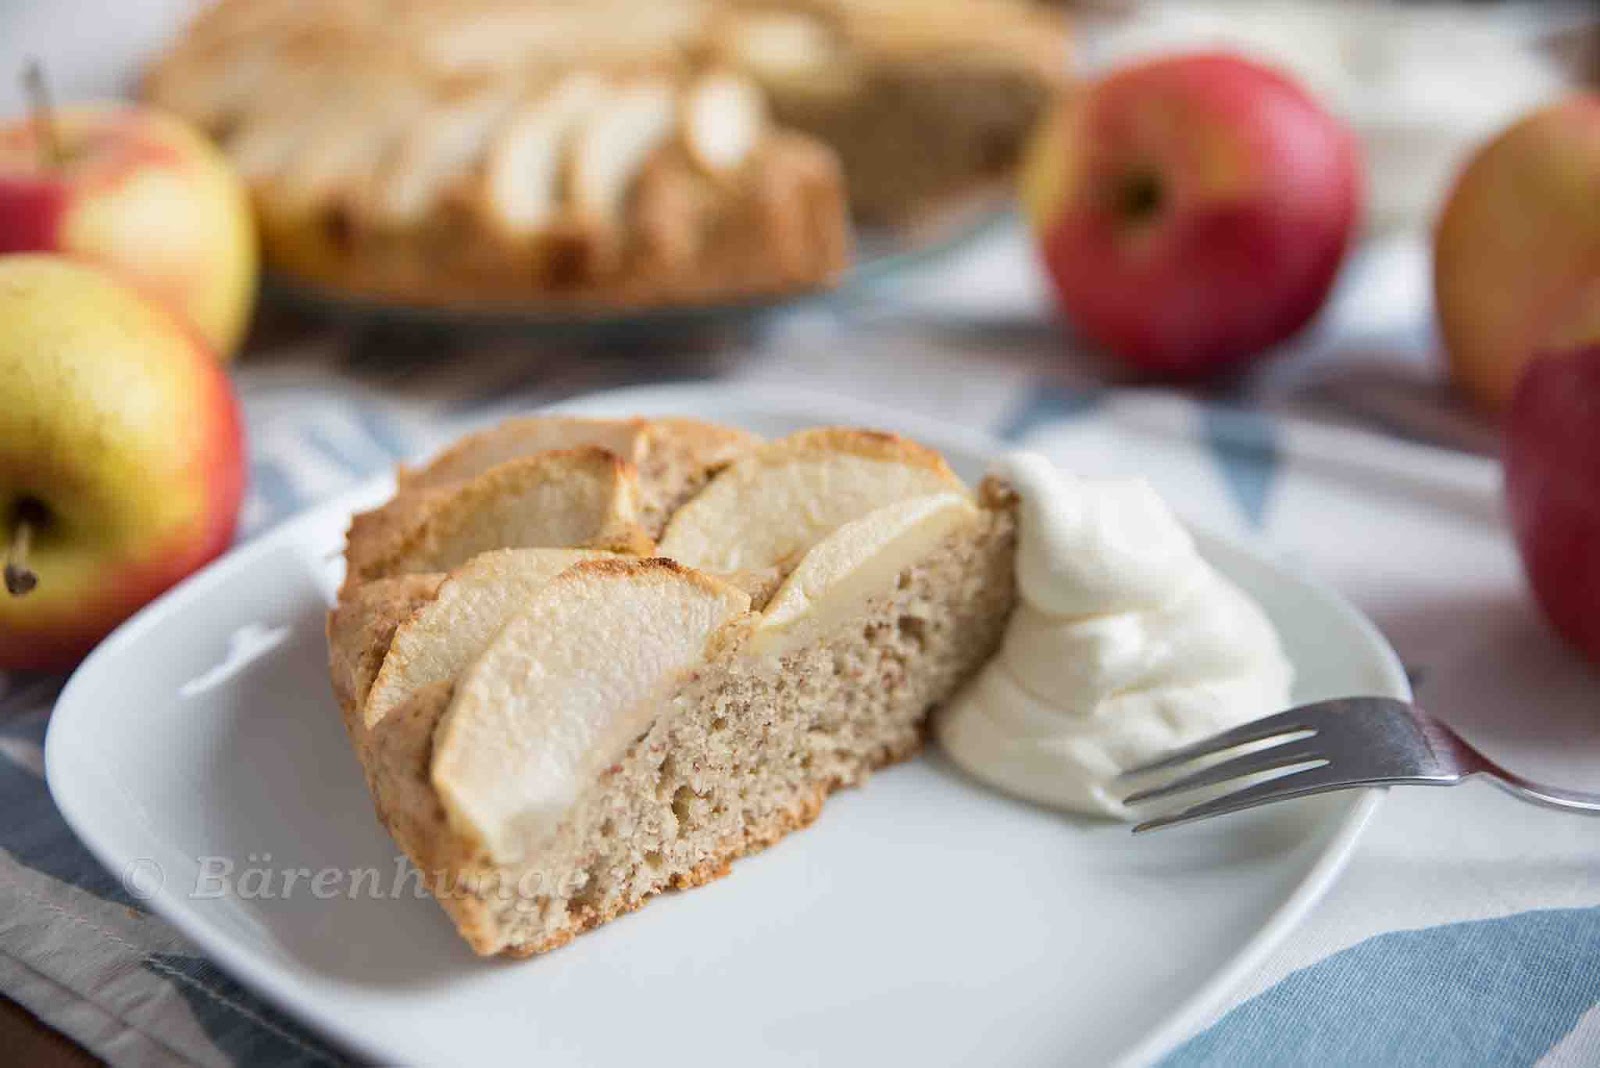 Apfel Mandel Kuchen | Bärenhunger | Bloglovin’